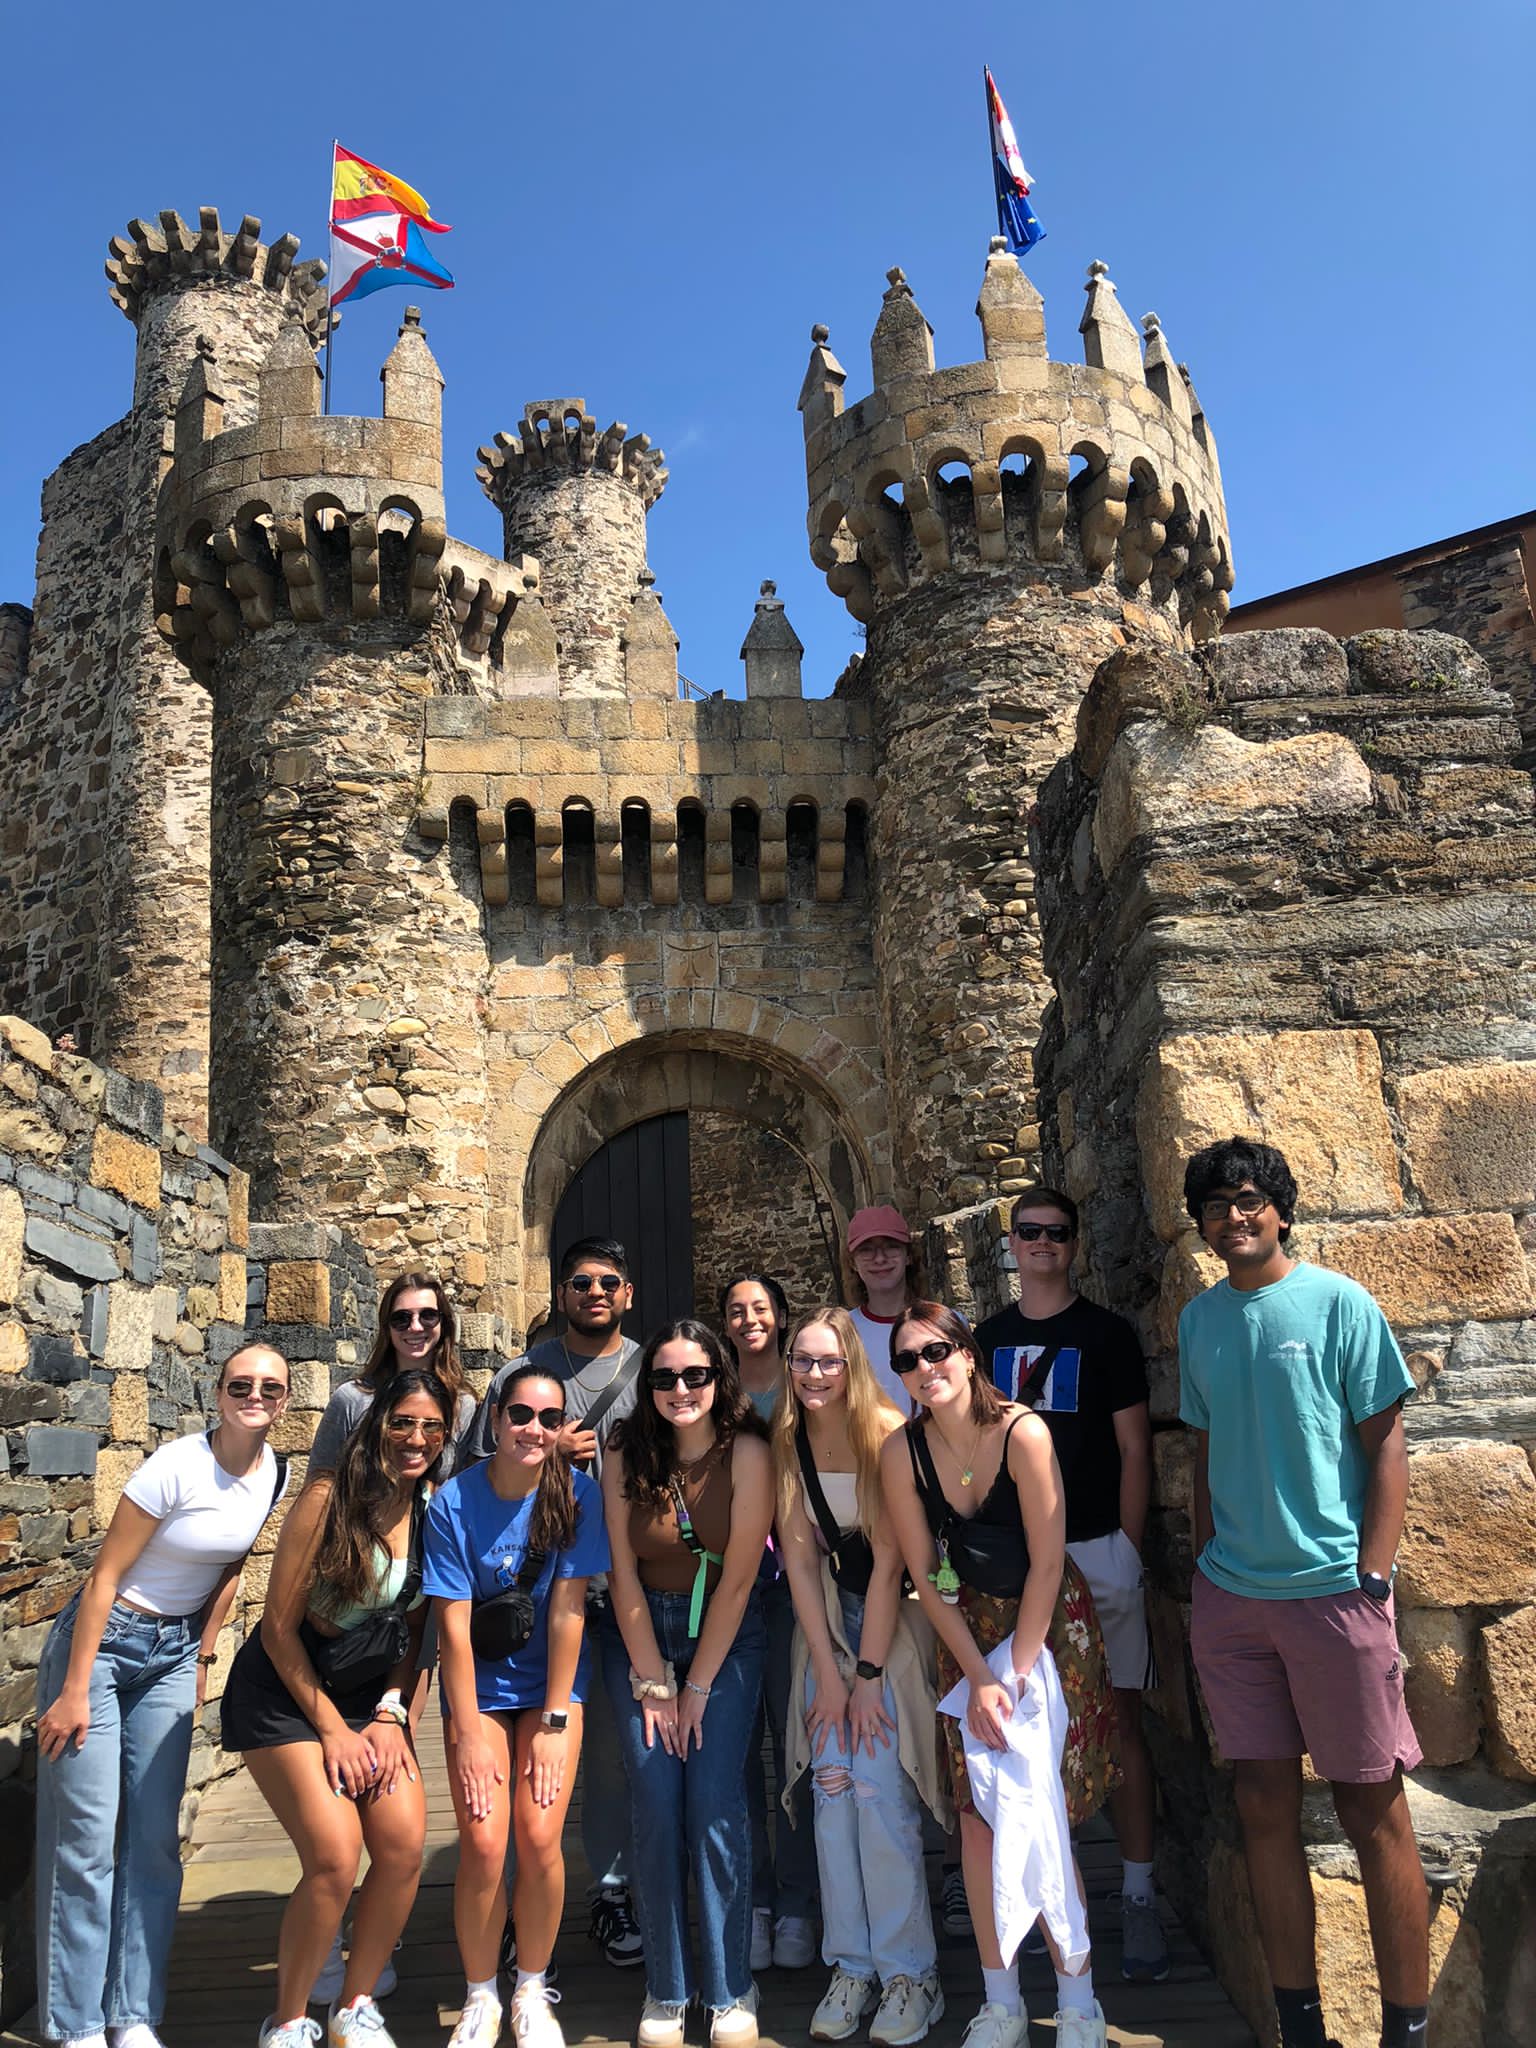 Exploring the castle in Ponferrada